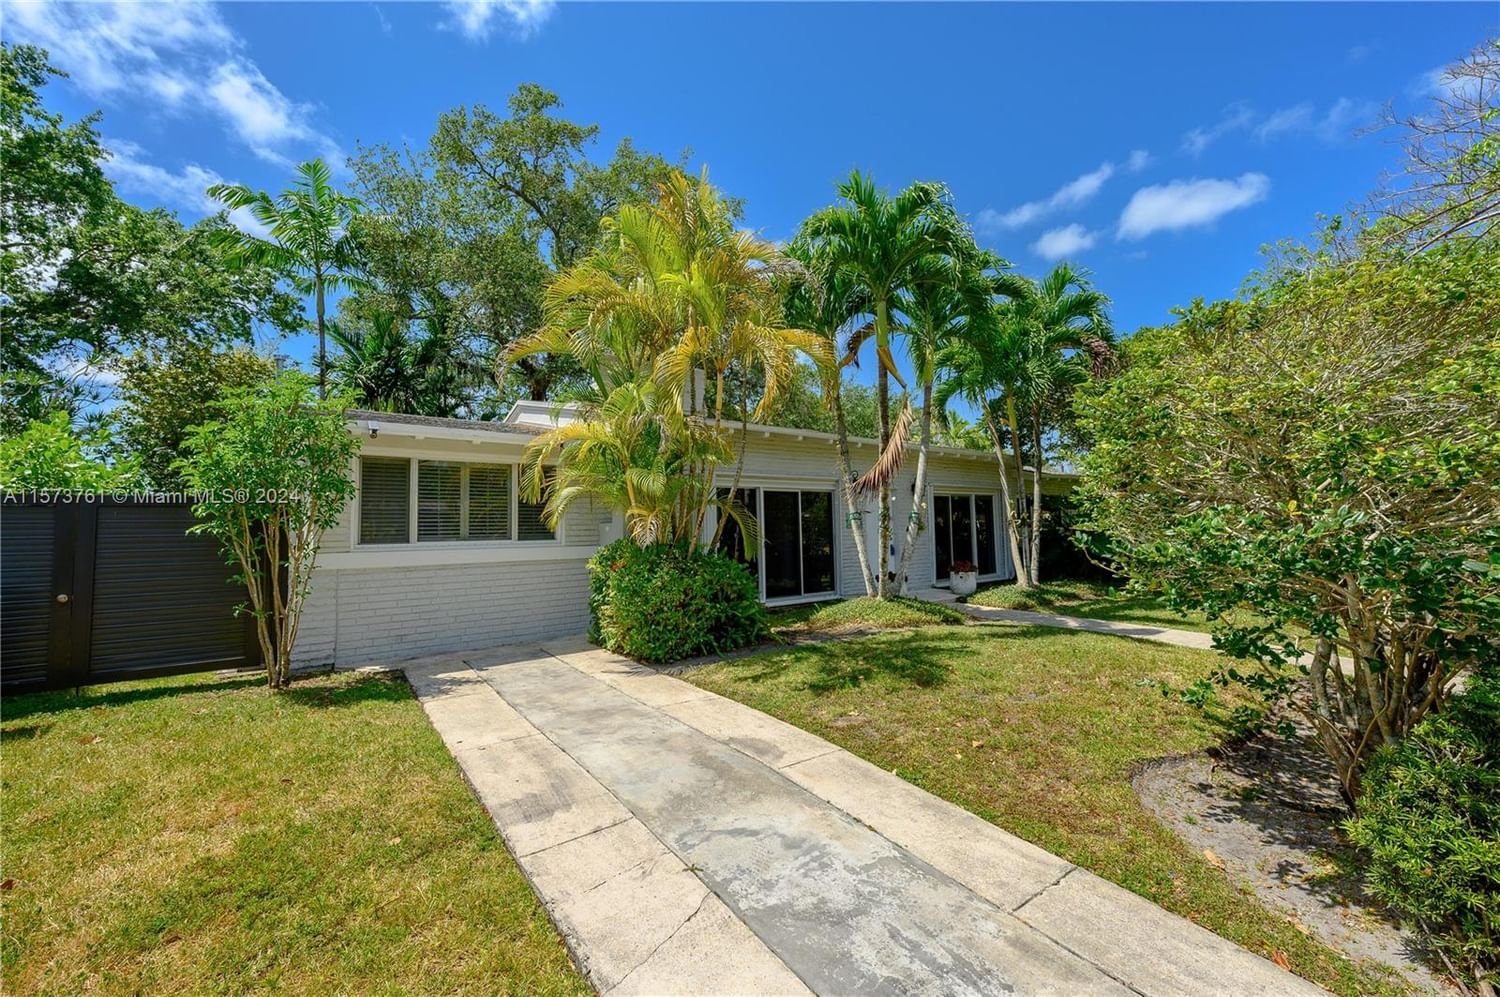 Real estate property located at 6370 49th St, Miami-Dade County, GREEN BRIAR ESTATES, Miami, FL